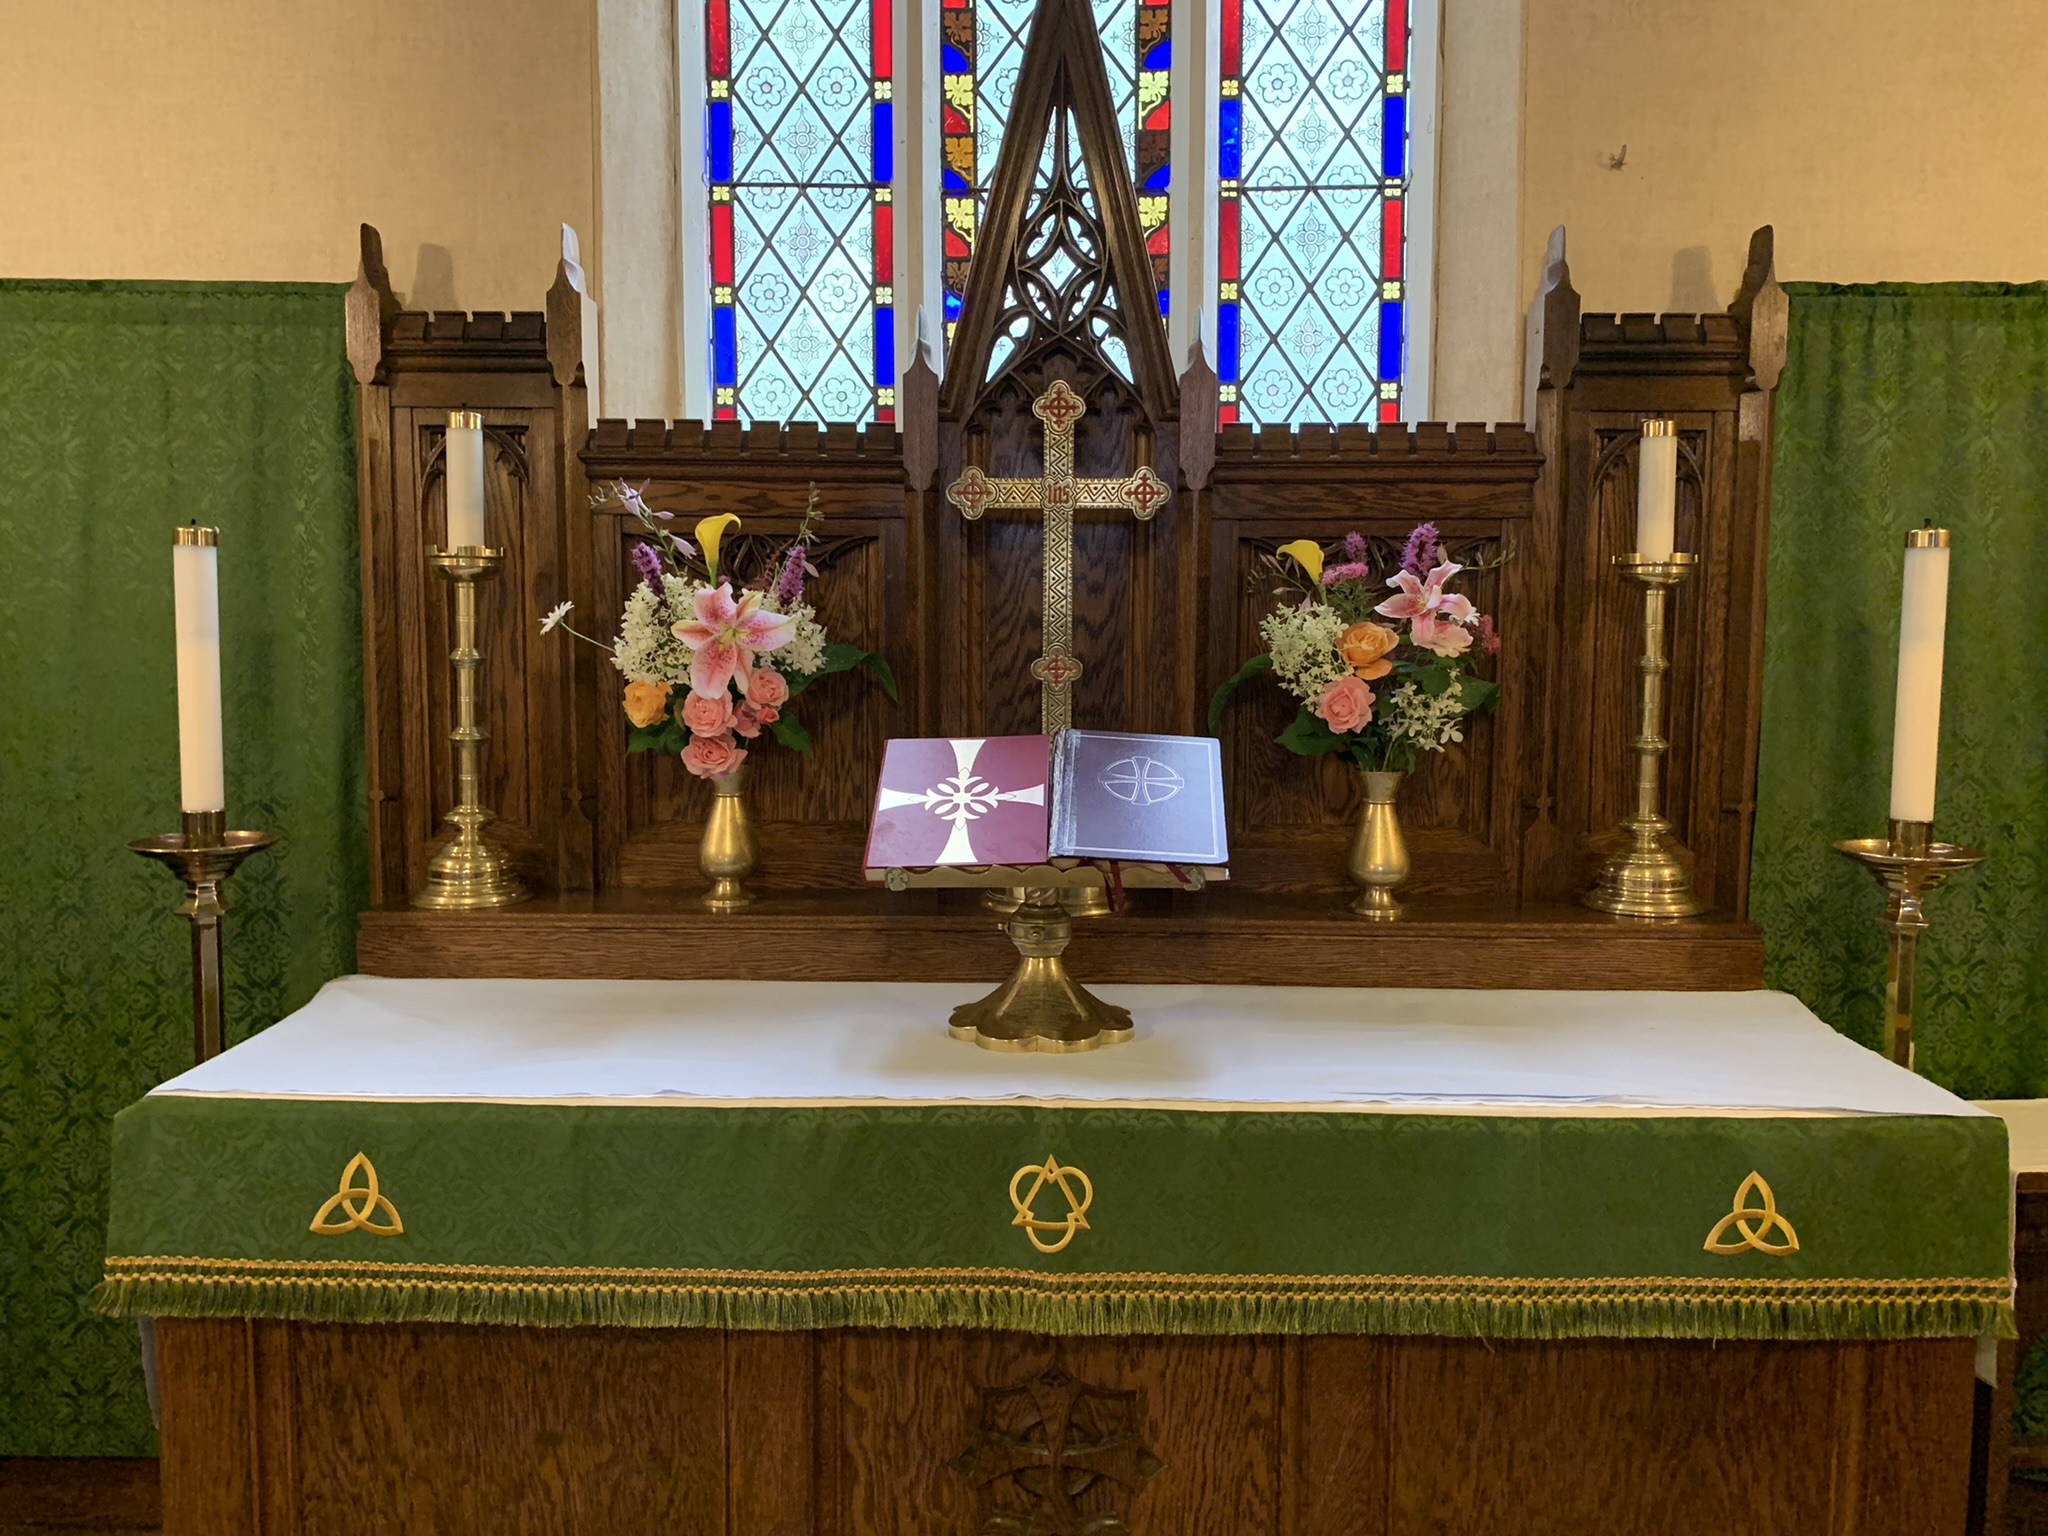 St. Luke's Altar Flowers in loving memory of Steven Ramey from Kingsley and Jane Ramey & Family, Sunday, July 31st, 2022.